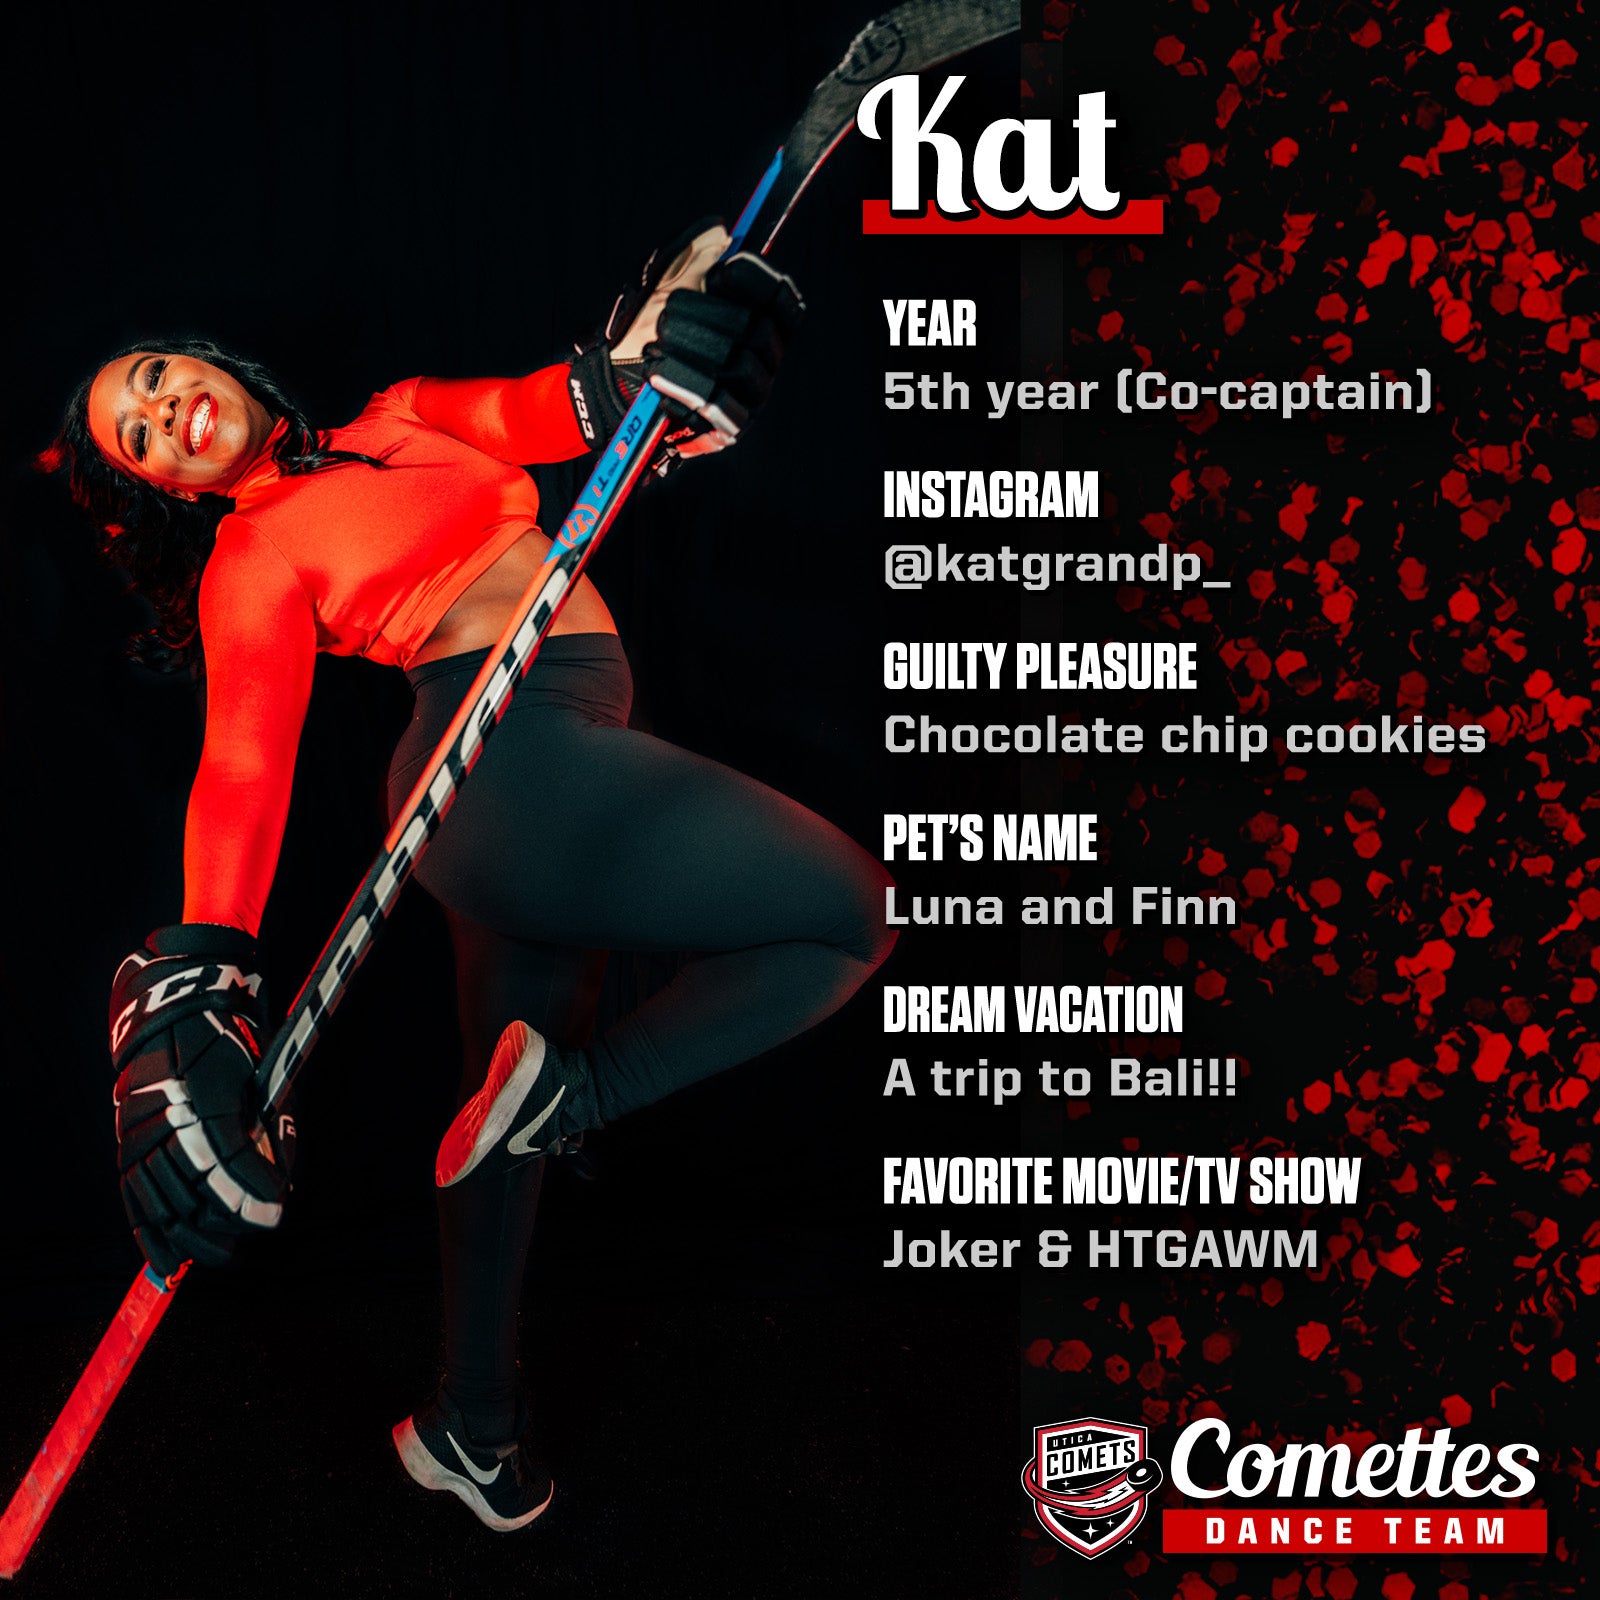 Meet The Comettes_Template_Kat copy.jpg